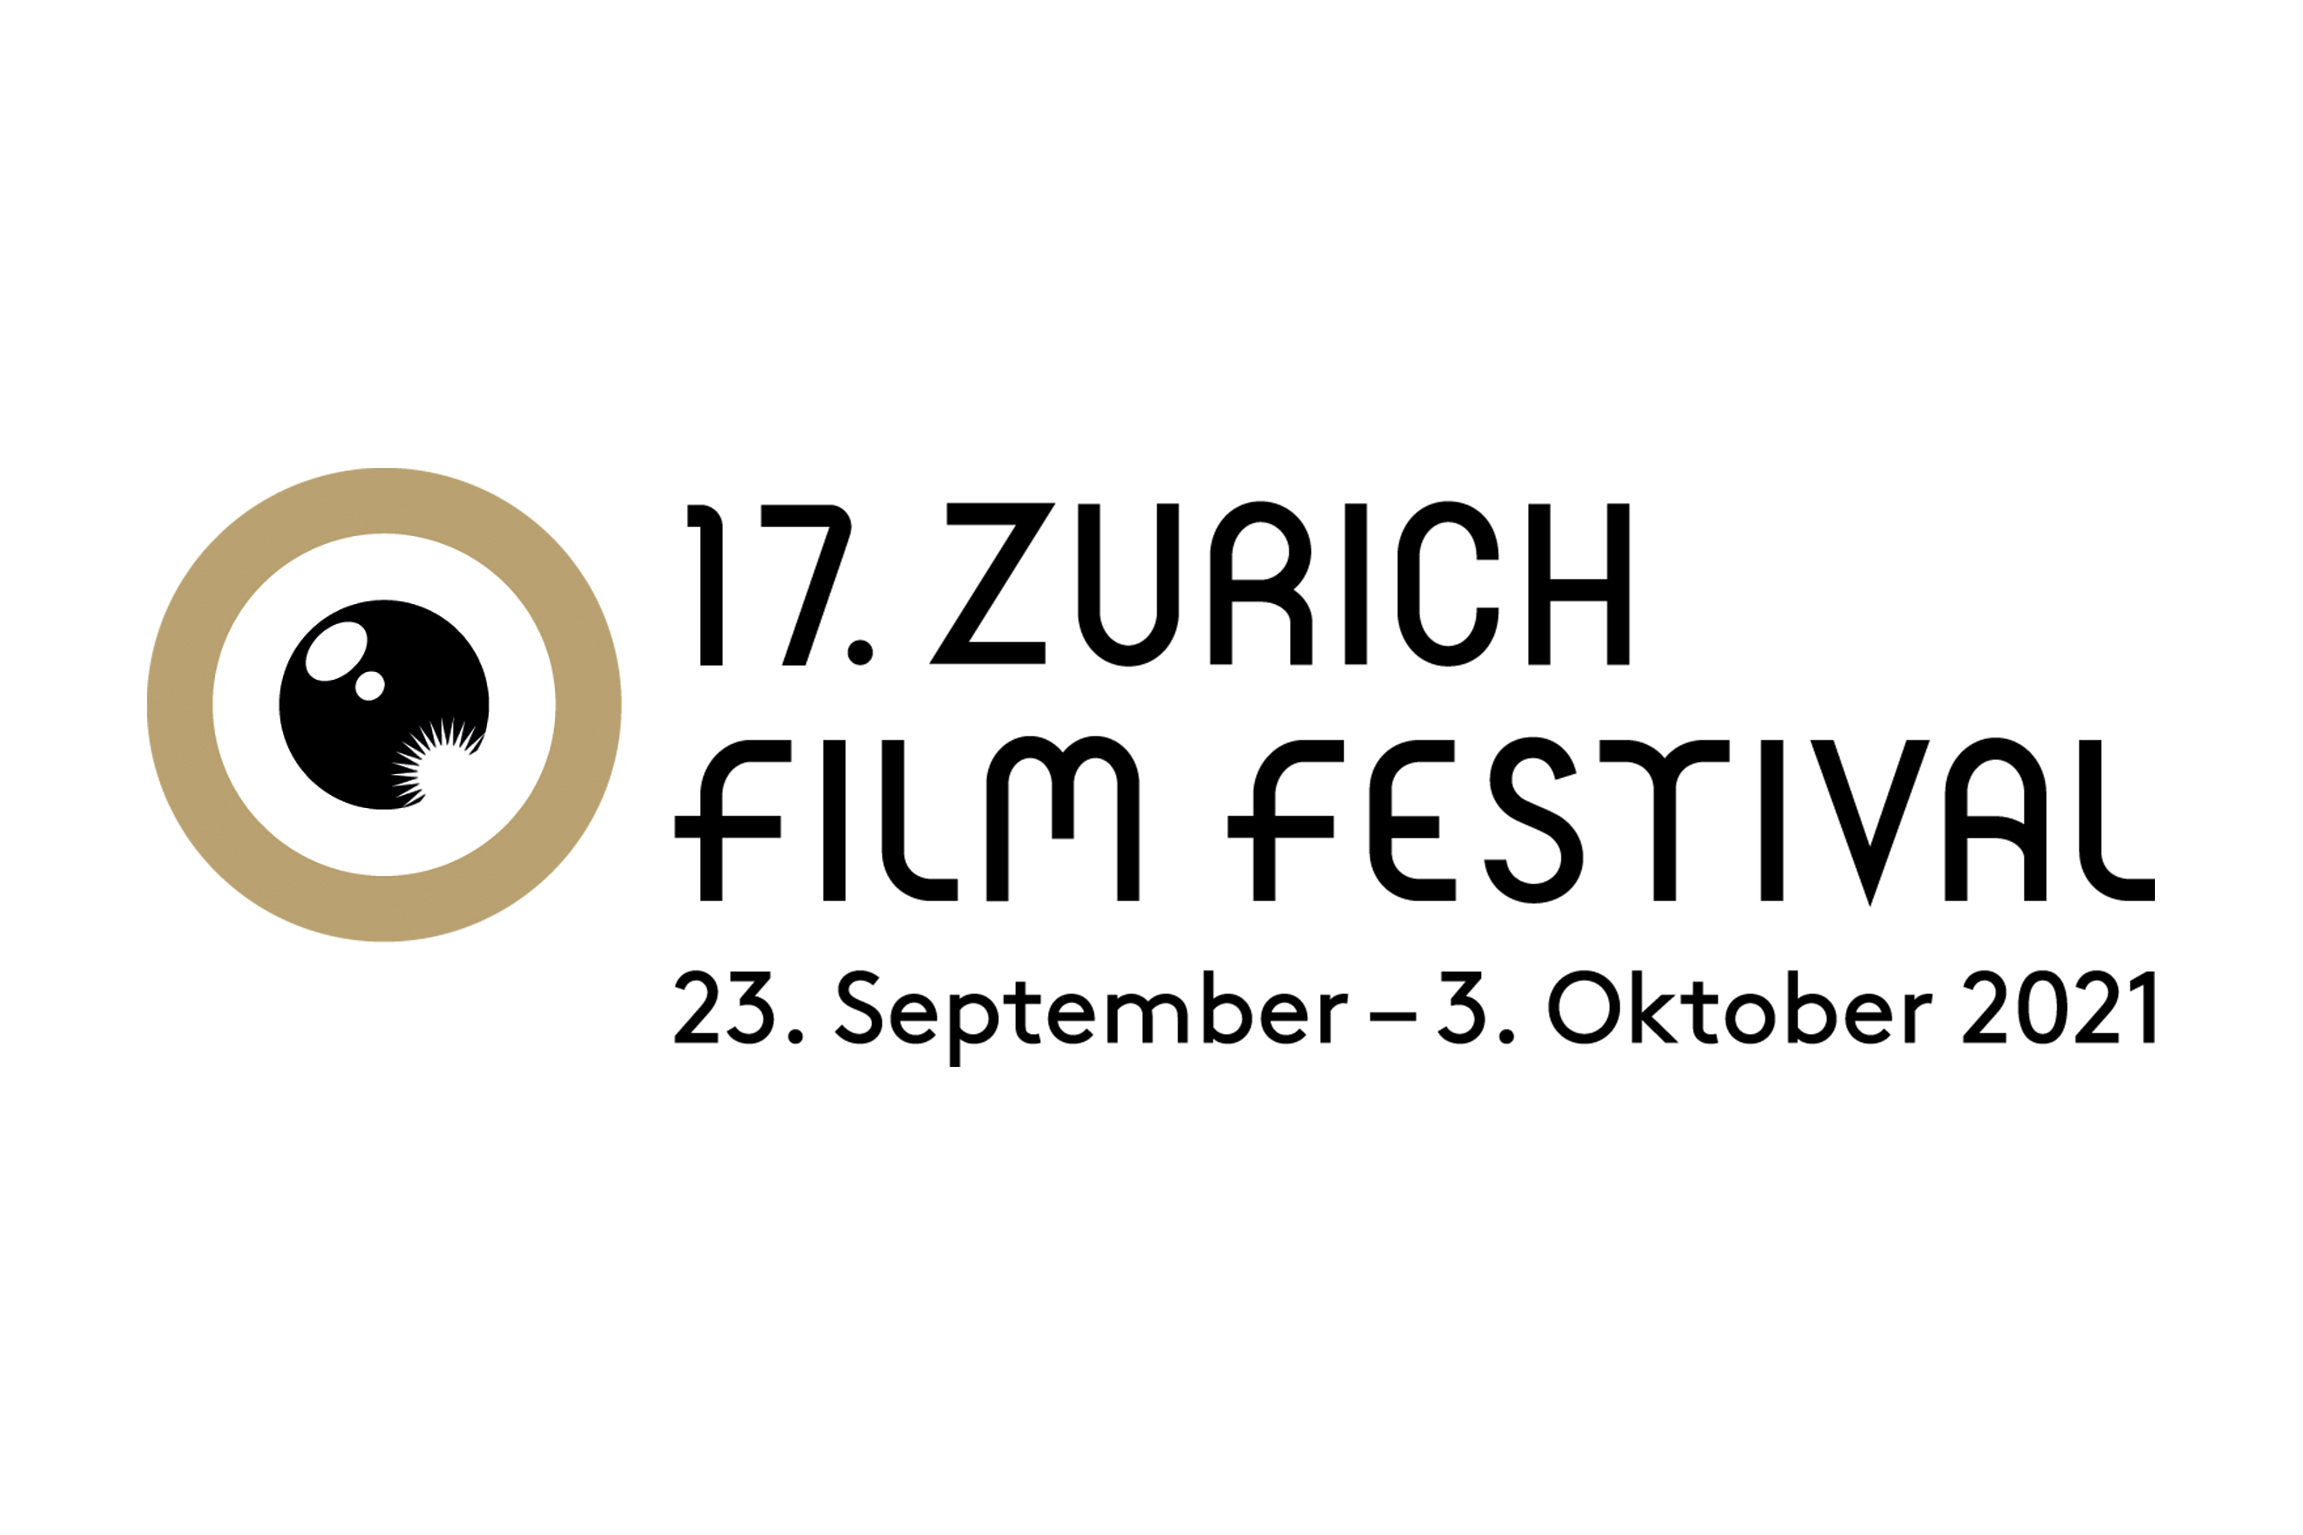 Zurich Film Festival 2021